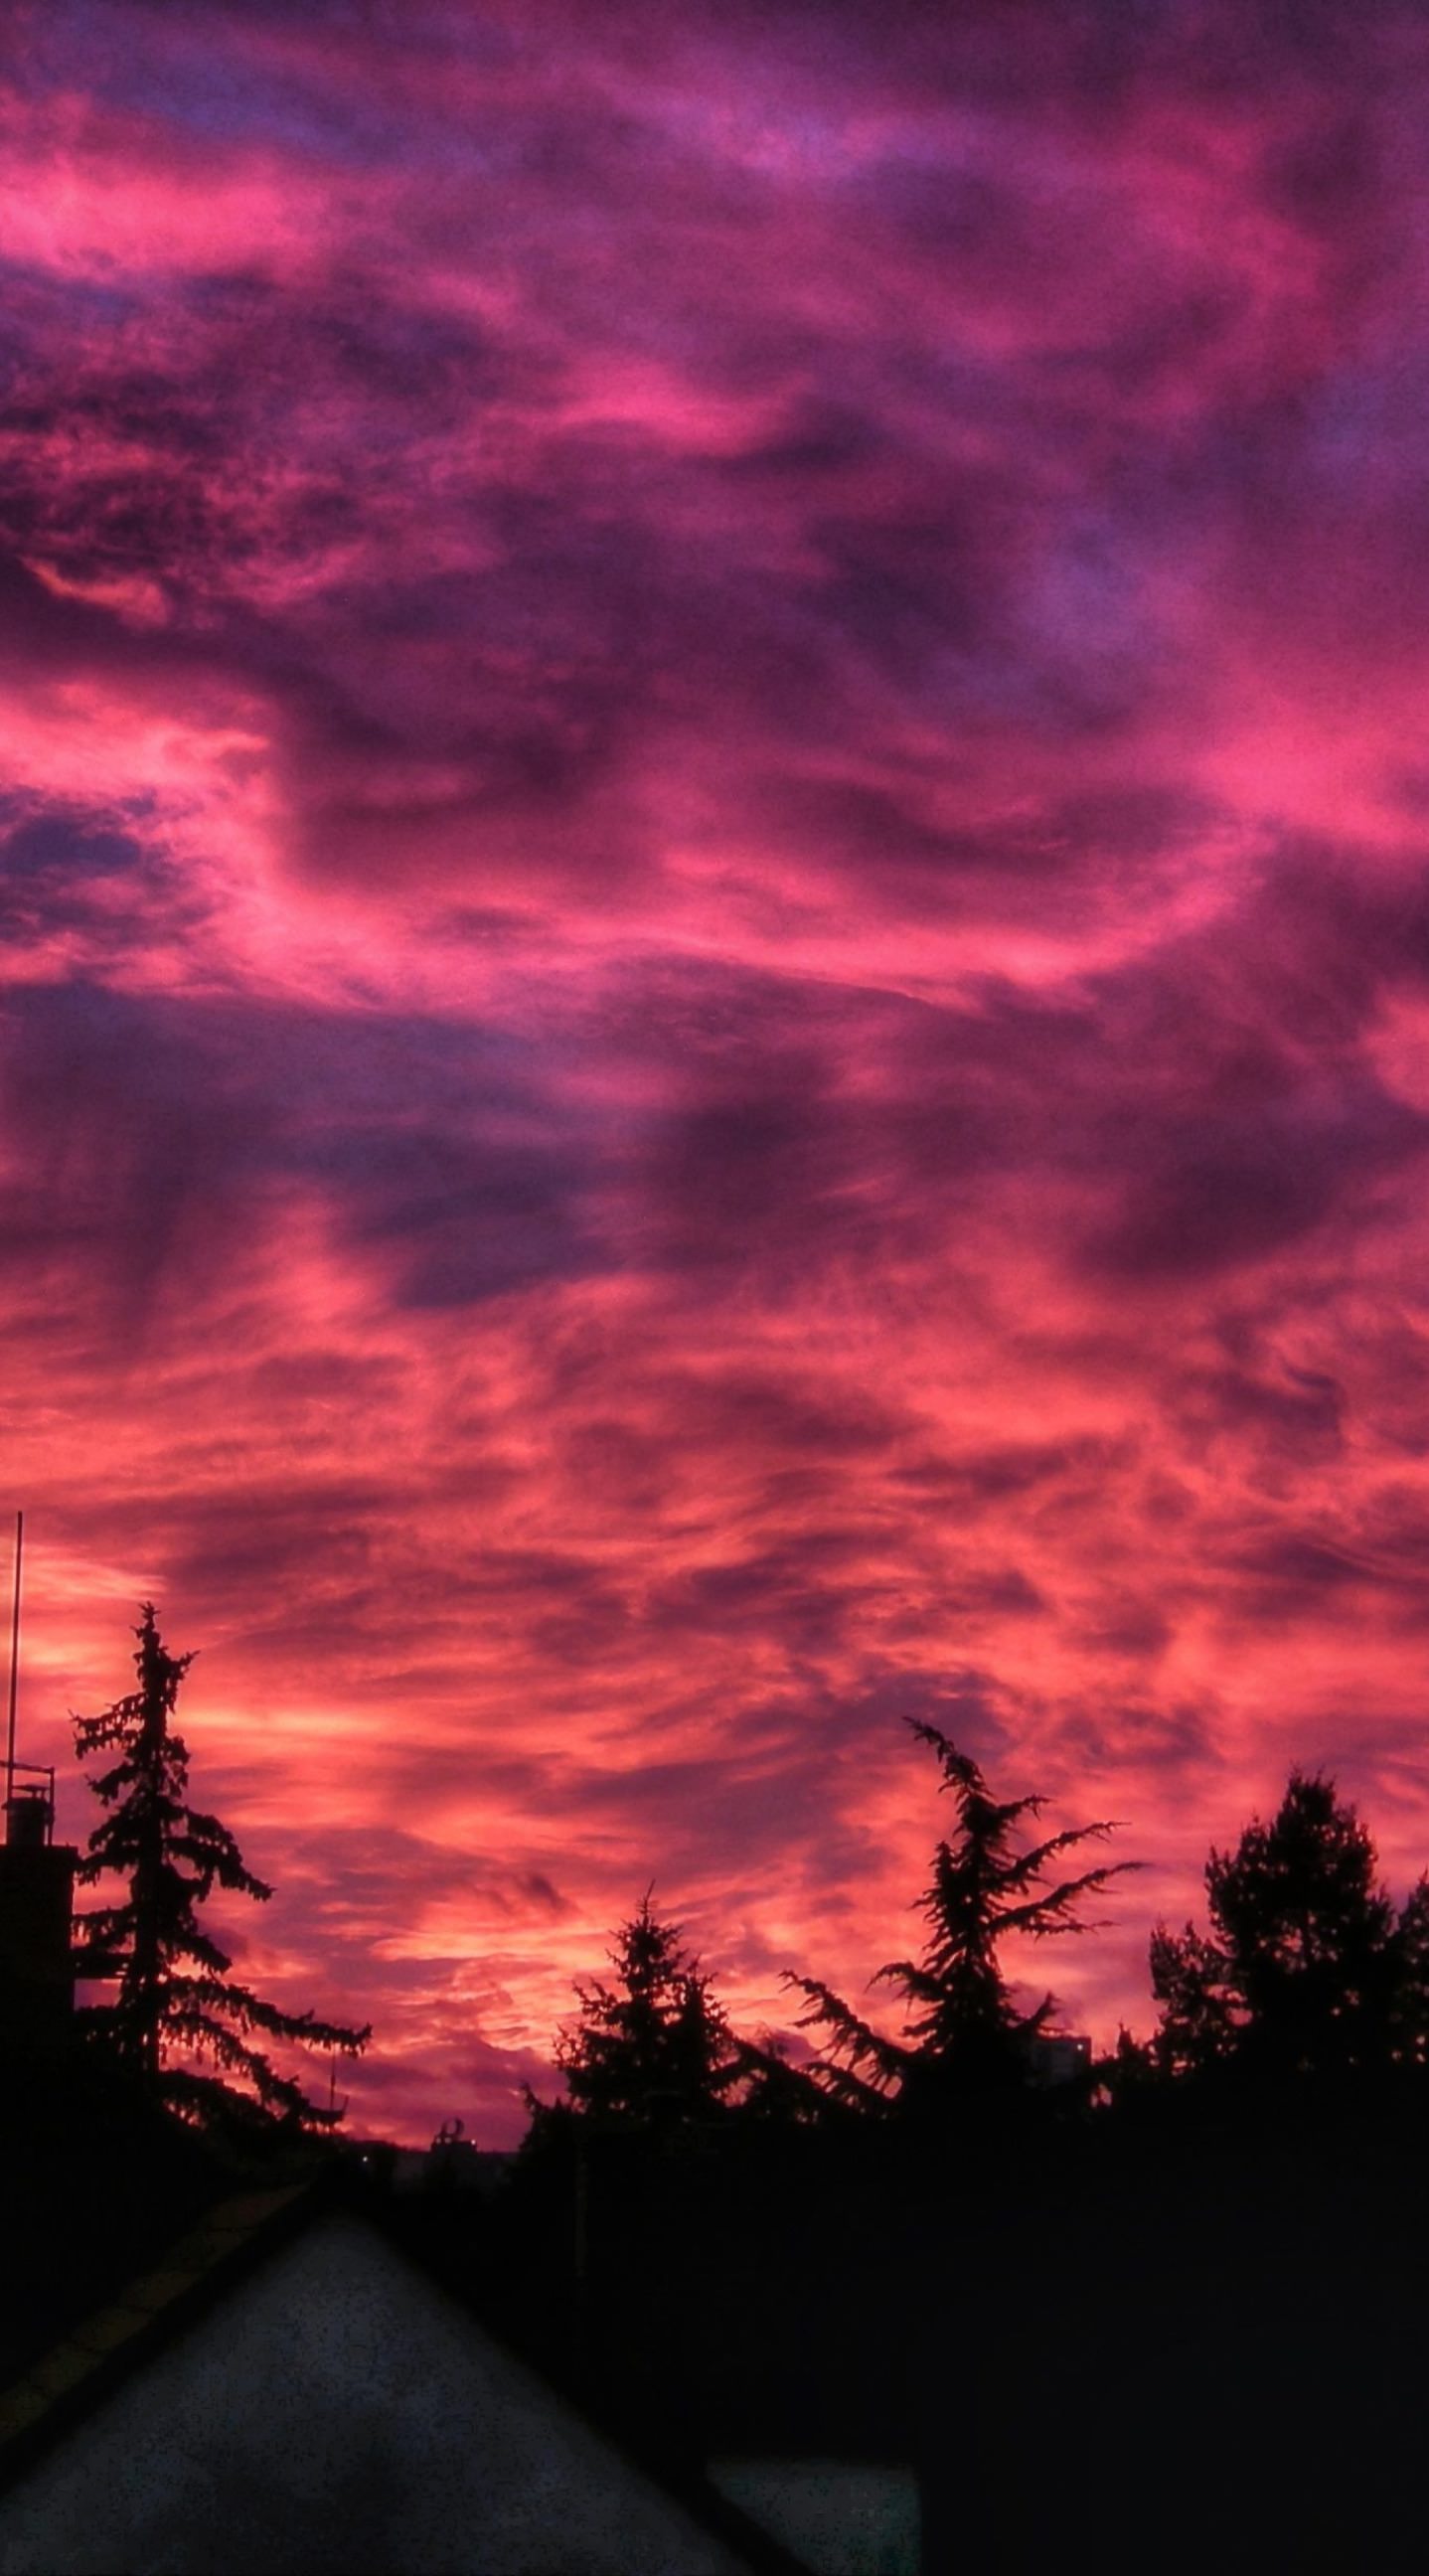 fond d'écran par défaut de l'iphone 6s,ciel,rémanence,ciel rouge au matin,nuage,la nature